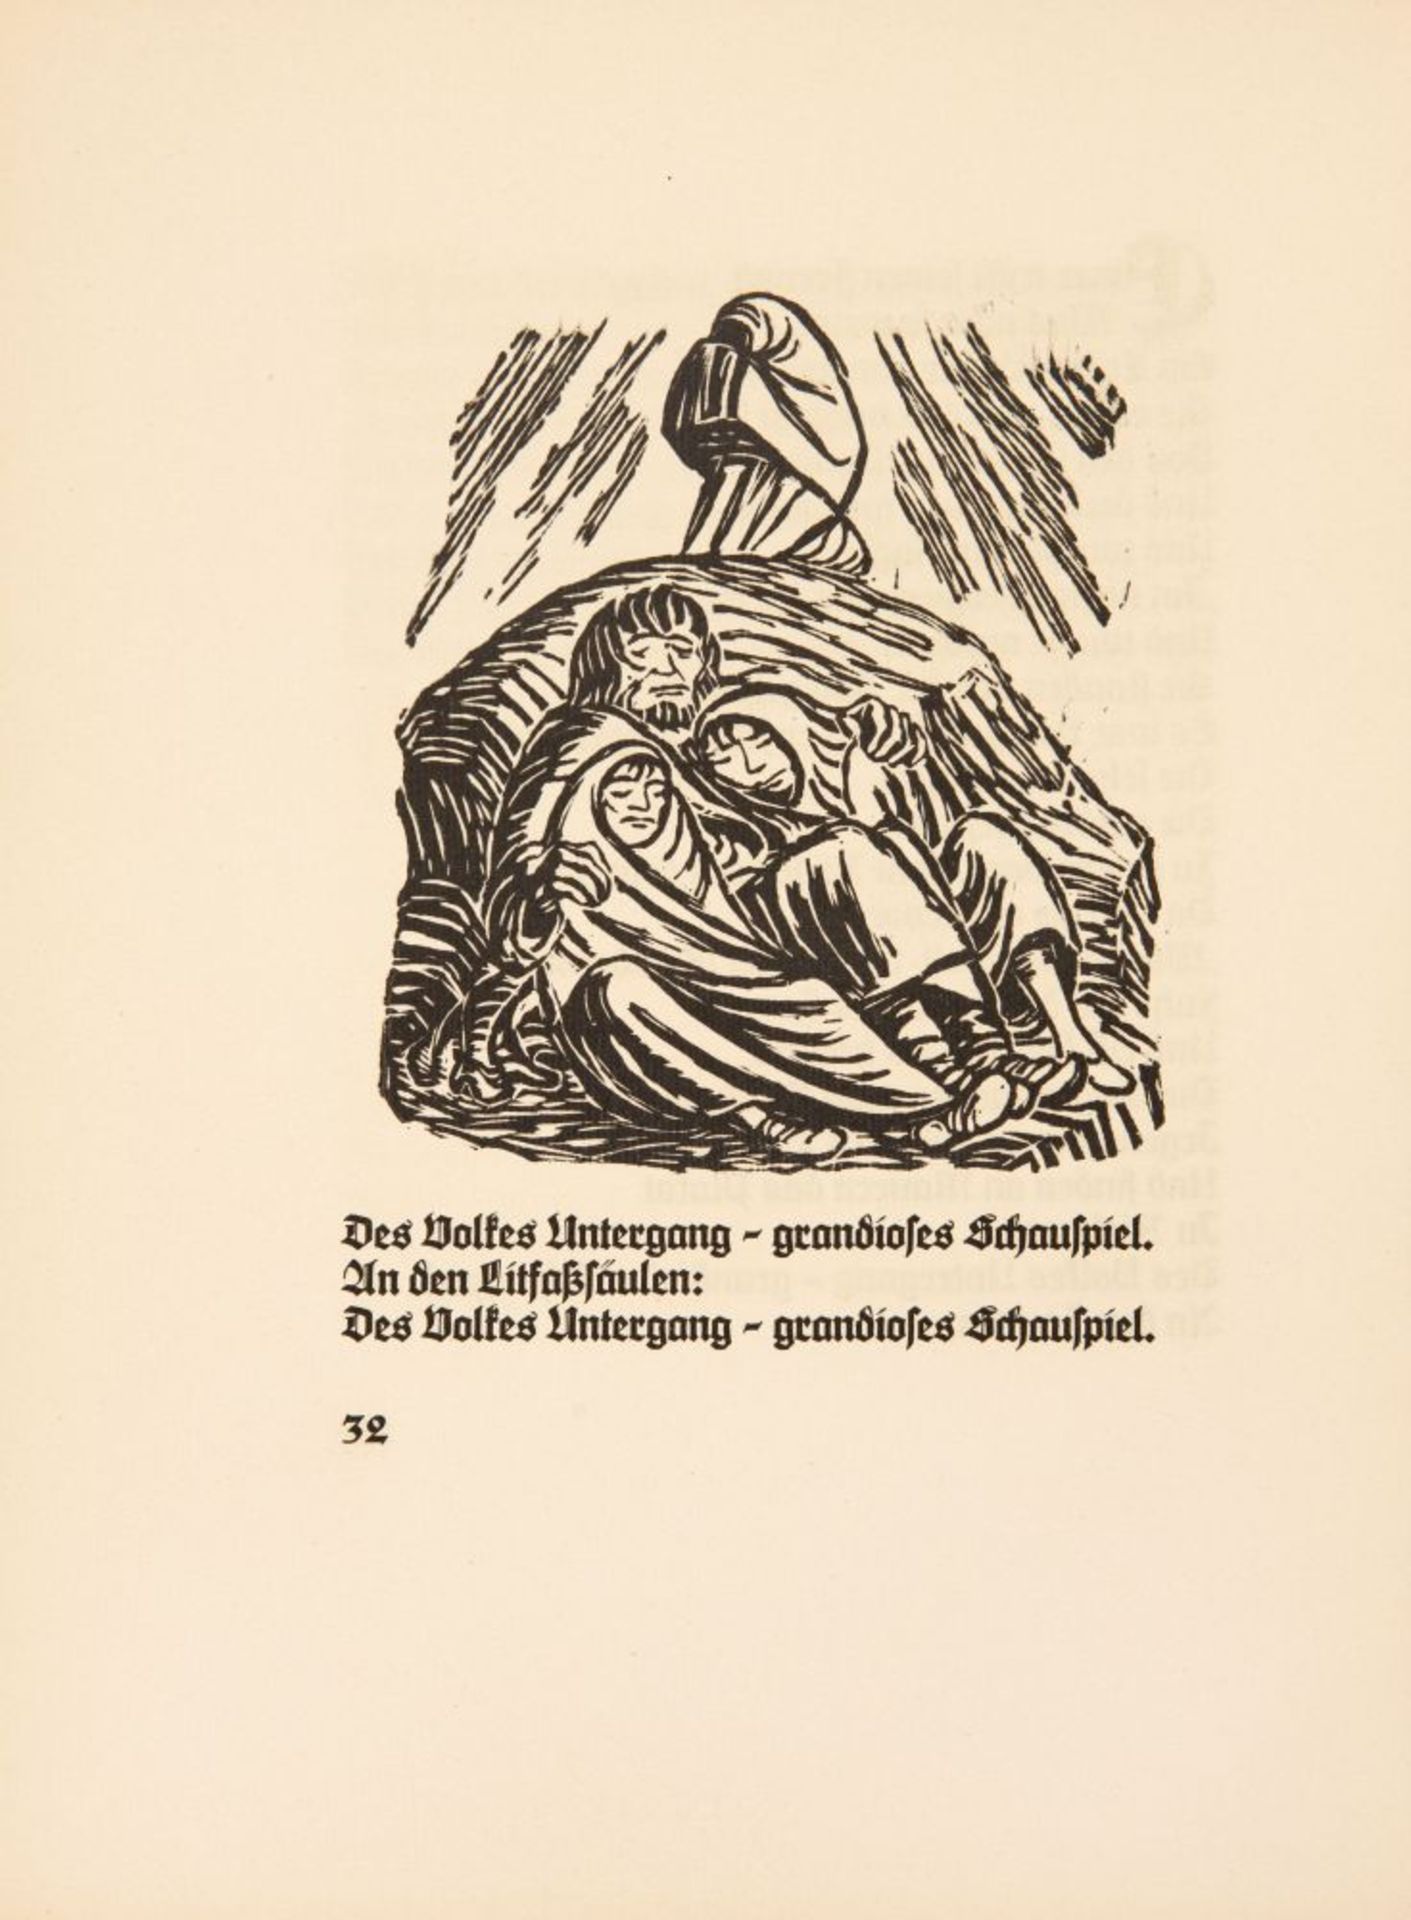 R. v. Walter / E. Barlach, Der Kopf. Bln 1919. - Ex. 183/200, sign.